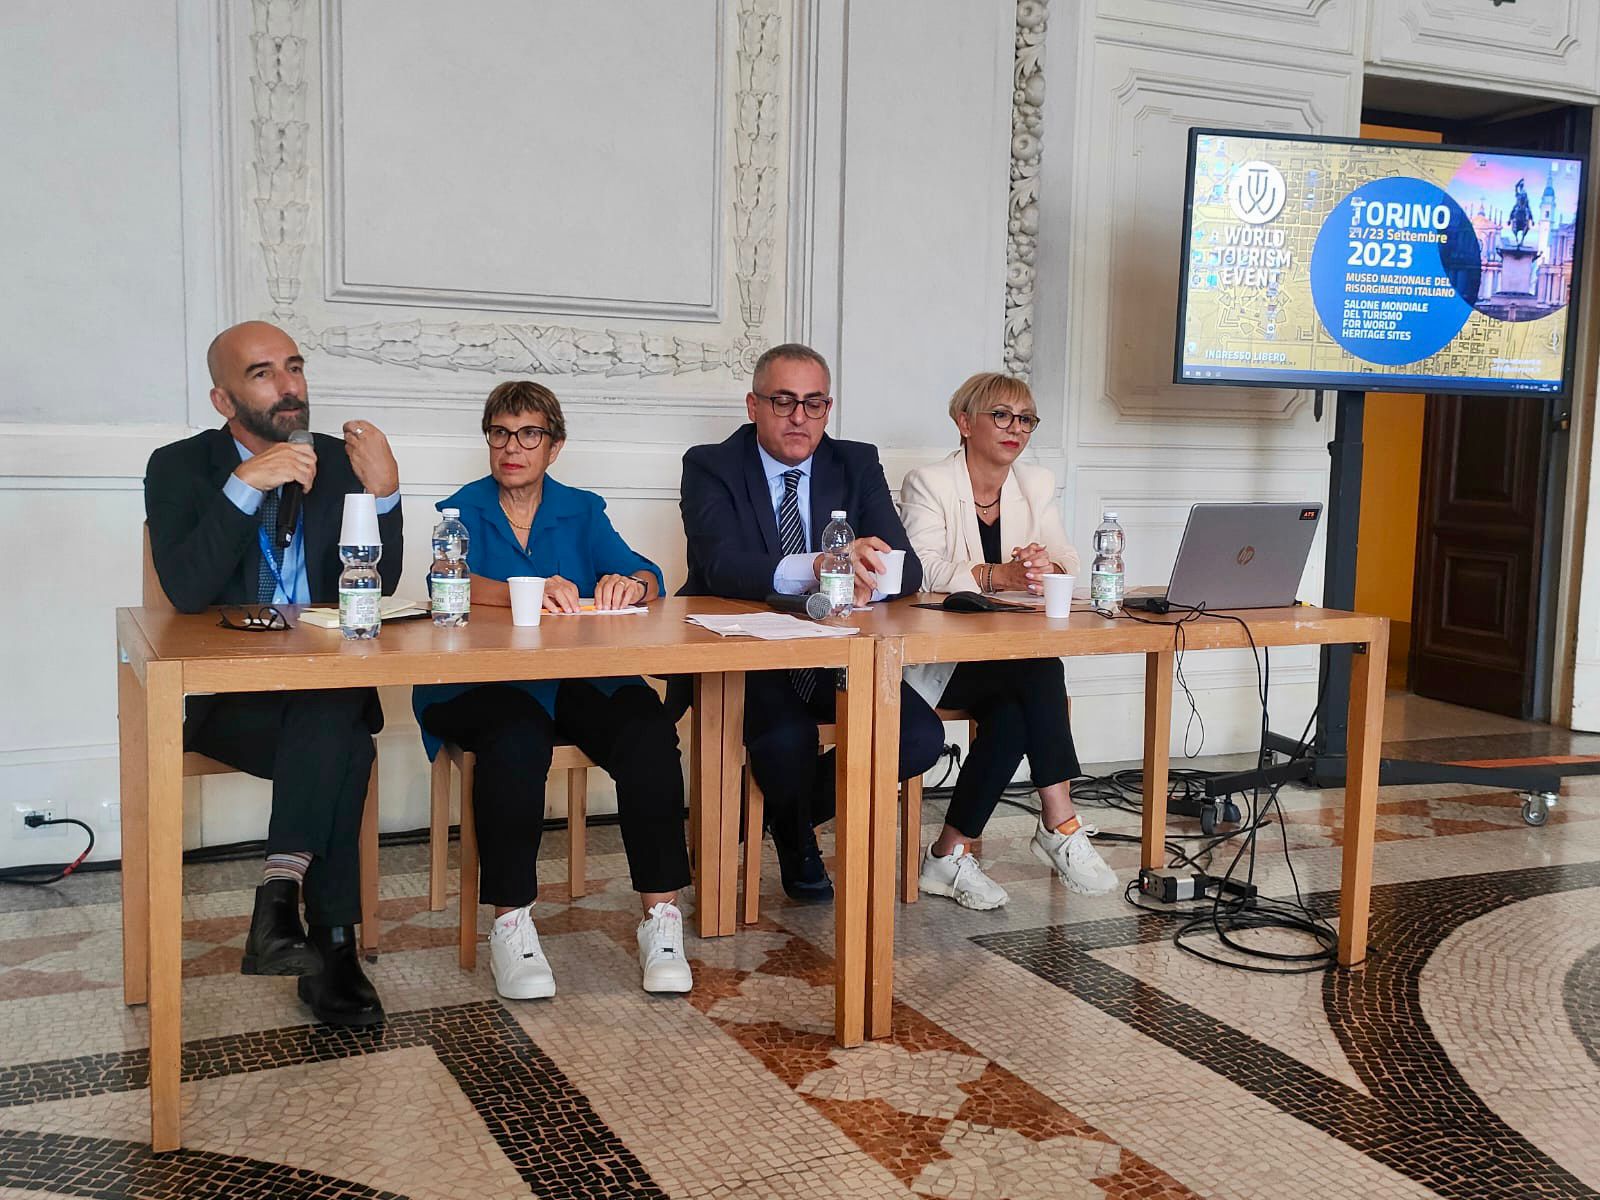 Da Caltanissetta a Torino: il Primo Parco dello Stile di Vita Mediterraneo al Salone mondiale del Turismo dei patrimoni UNESCO